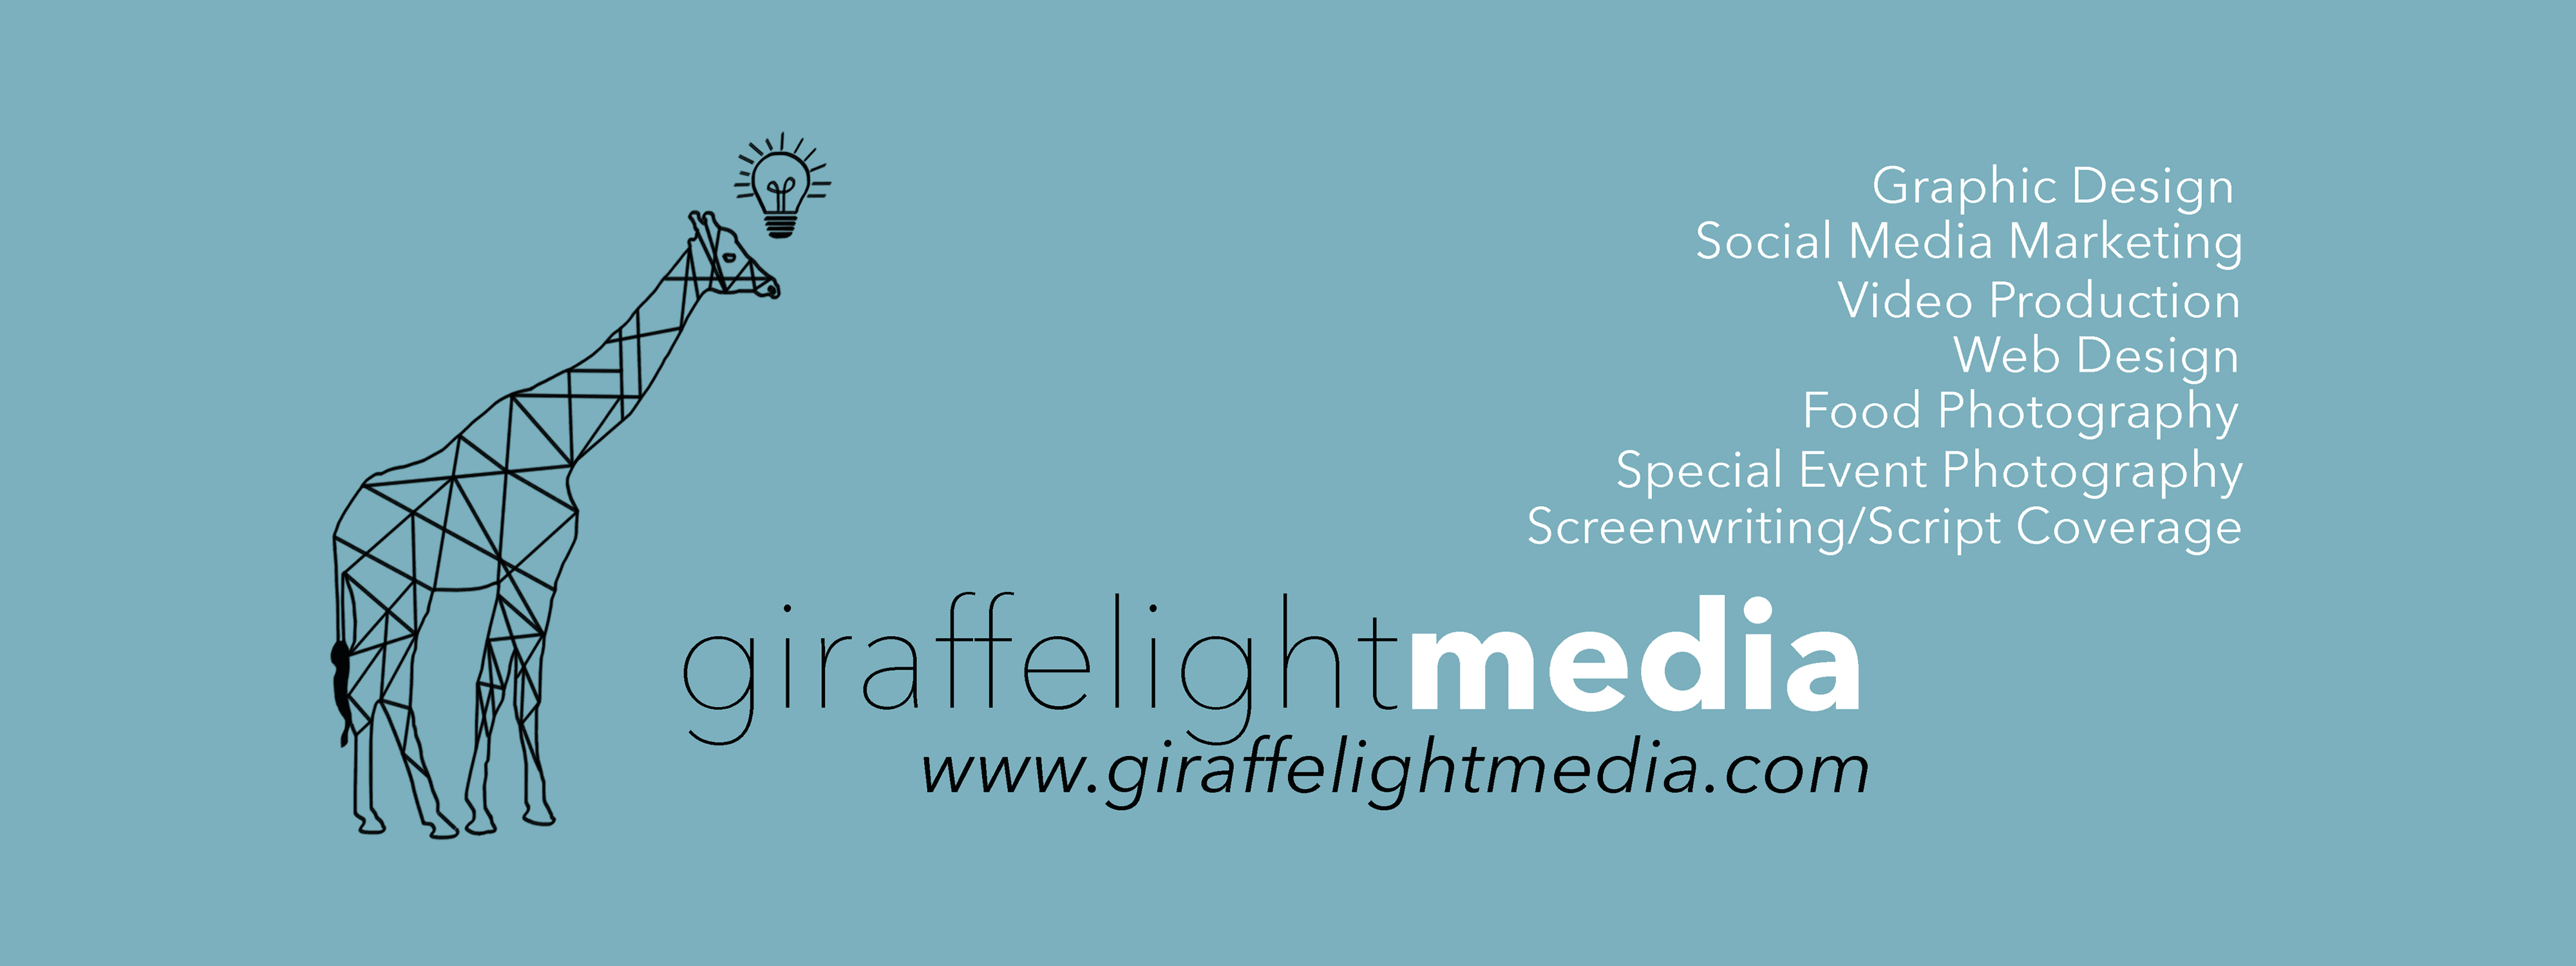 GiraffeLight_Media 横幅